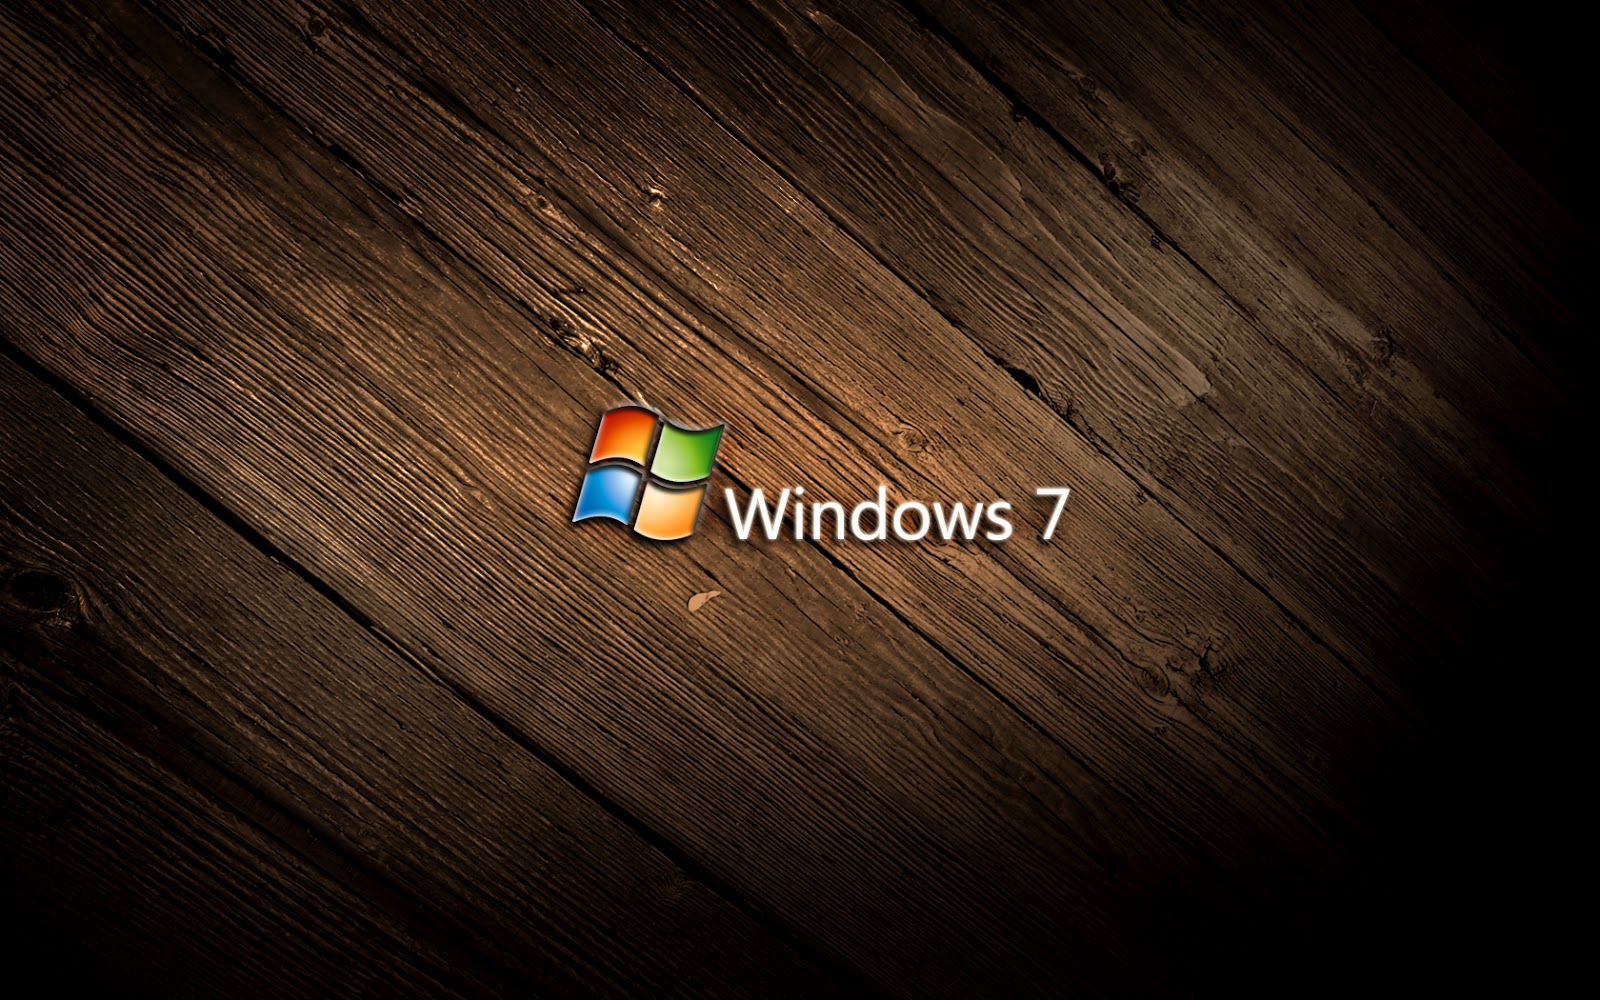 Hãy trang trí cho máy tính của bạn với những hình nền Windows 7 tuyệt đẹp. Chất lượng của những hình nền đó sẽ khiến cho máy tính của bạn trở nên lung linh và độc đáo hơn. Bạn sẽ không thể bỏ qua những bức ảnh đẹp này!